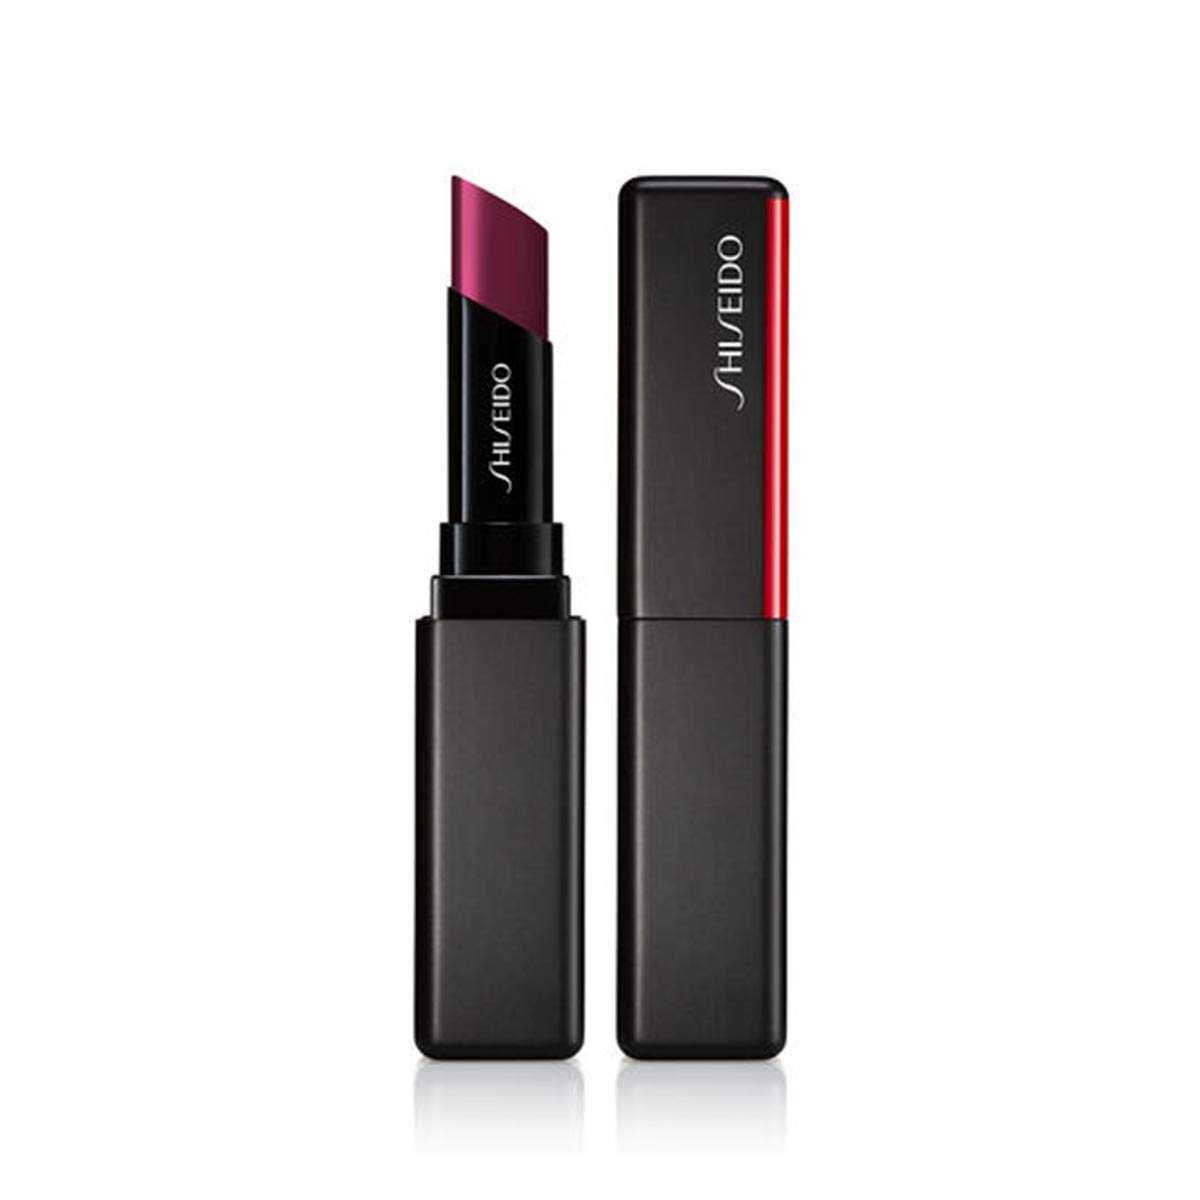 Shiseido VisionAiry Gel Lipstick, 216 Vortex, 1 x 1.6 g, ‎pink